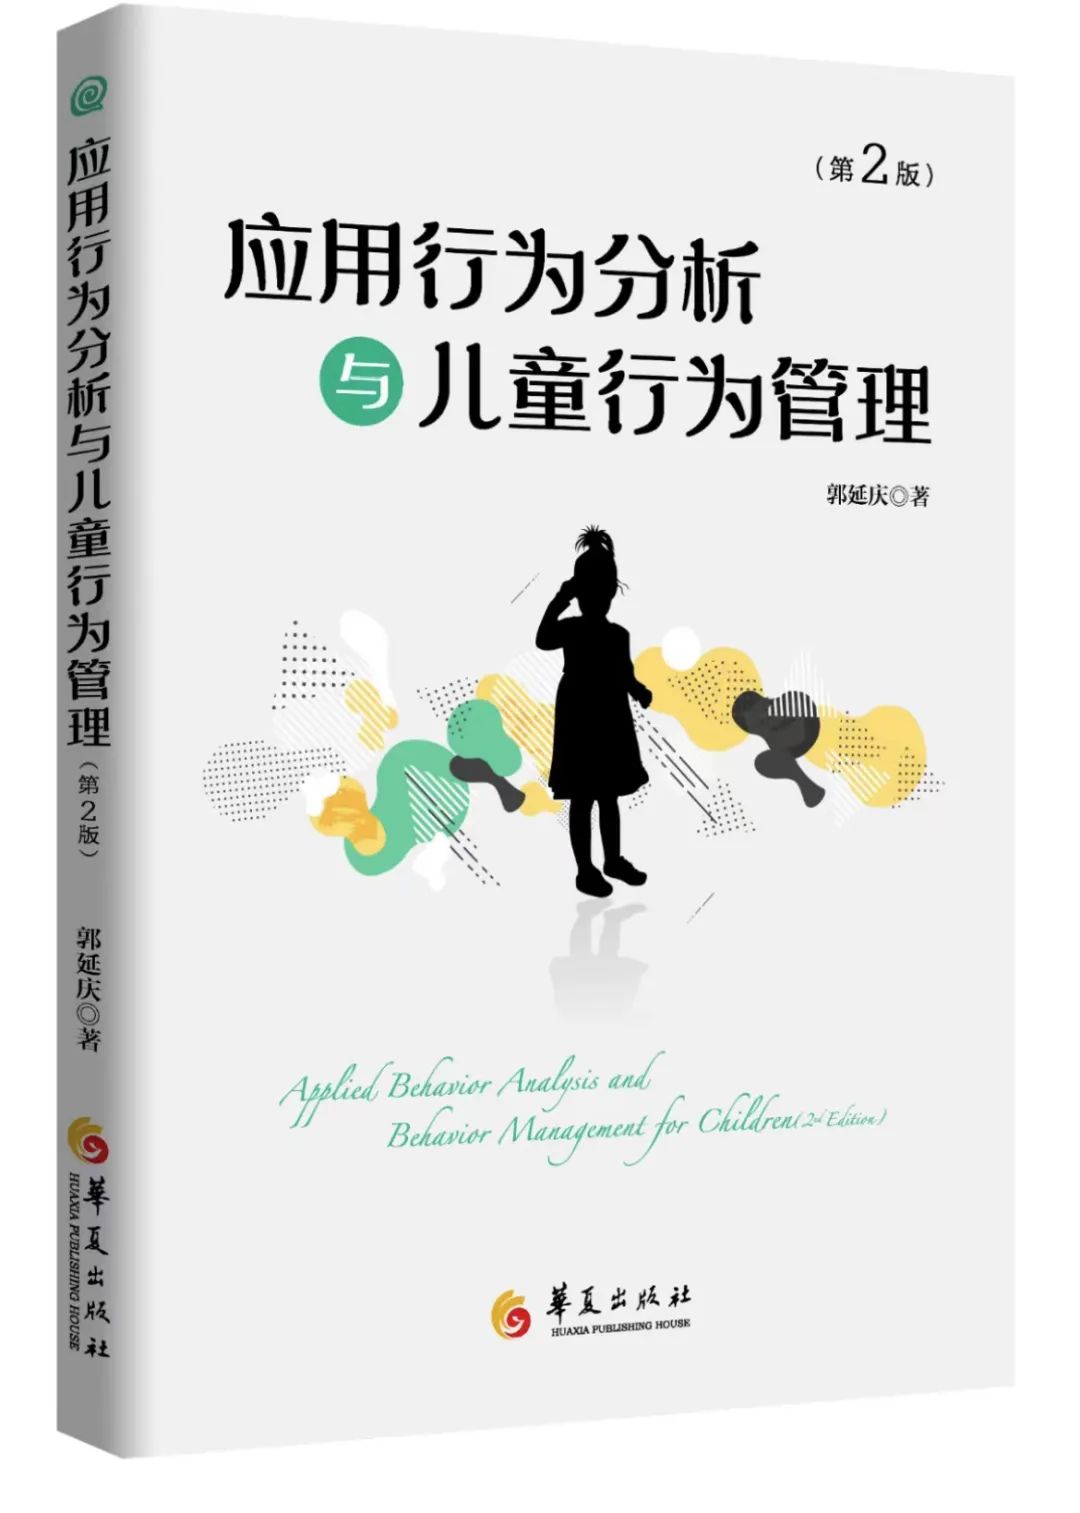 郭延庆《应用行为分析与儿童行为管理》第二版自序